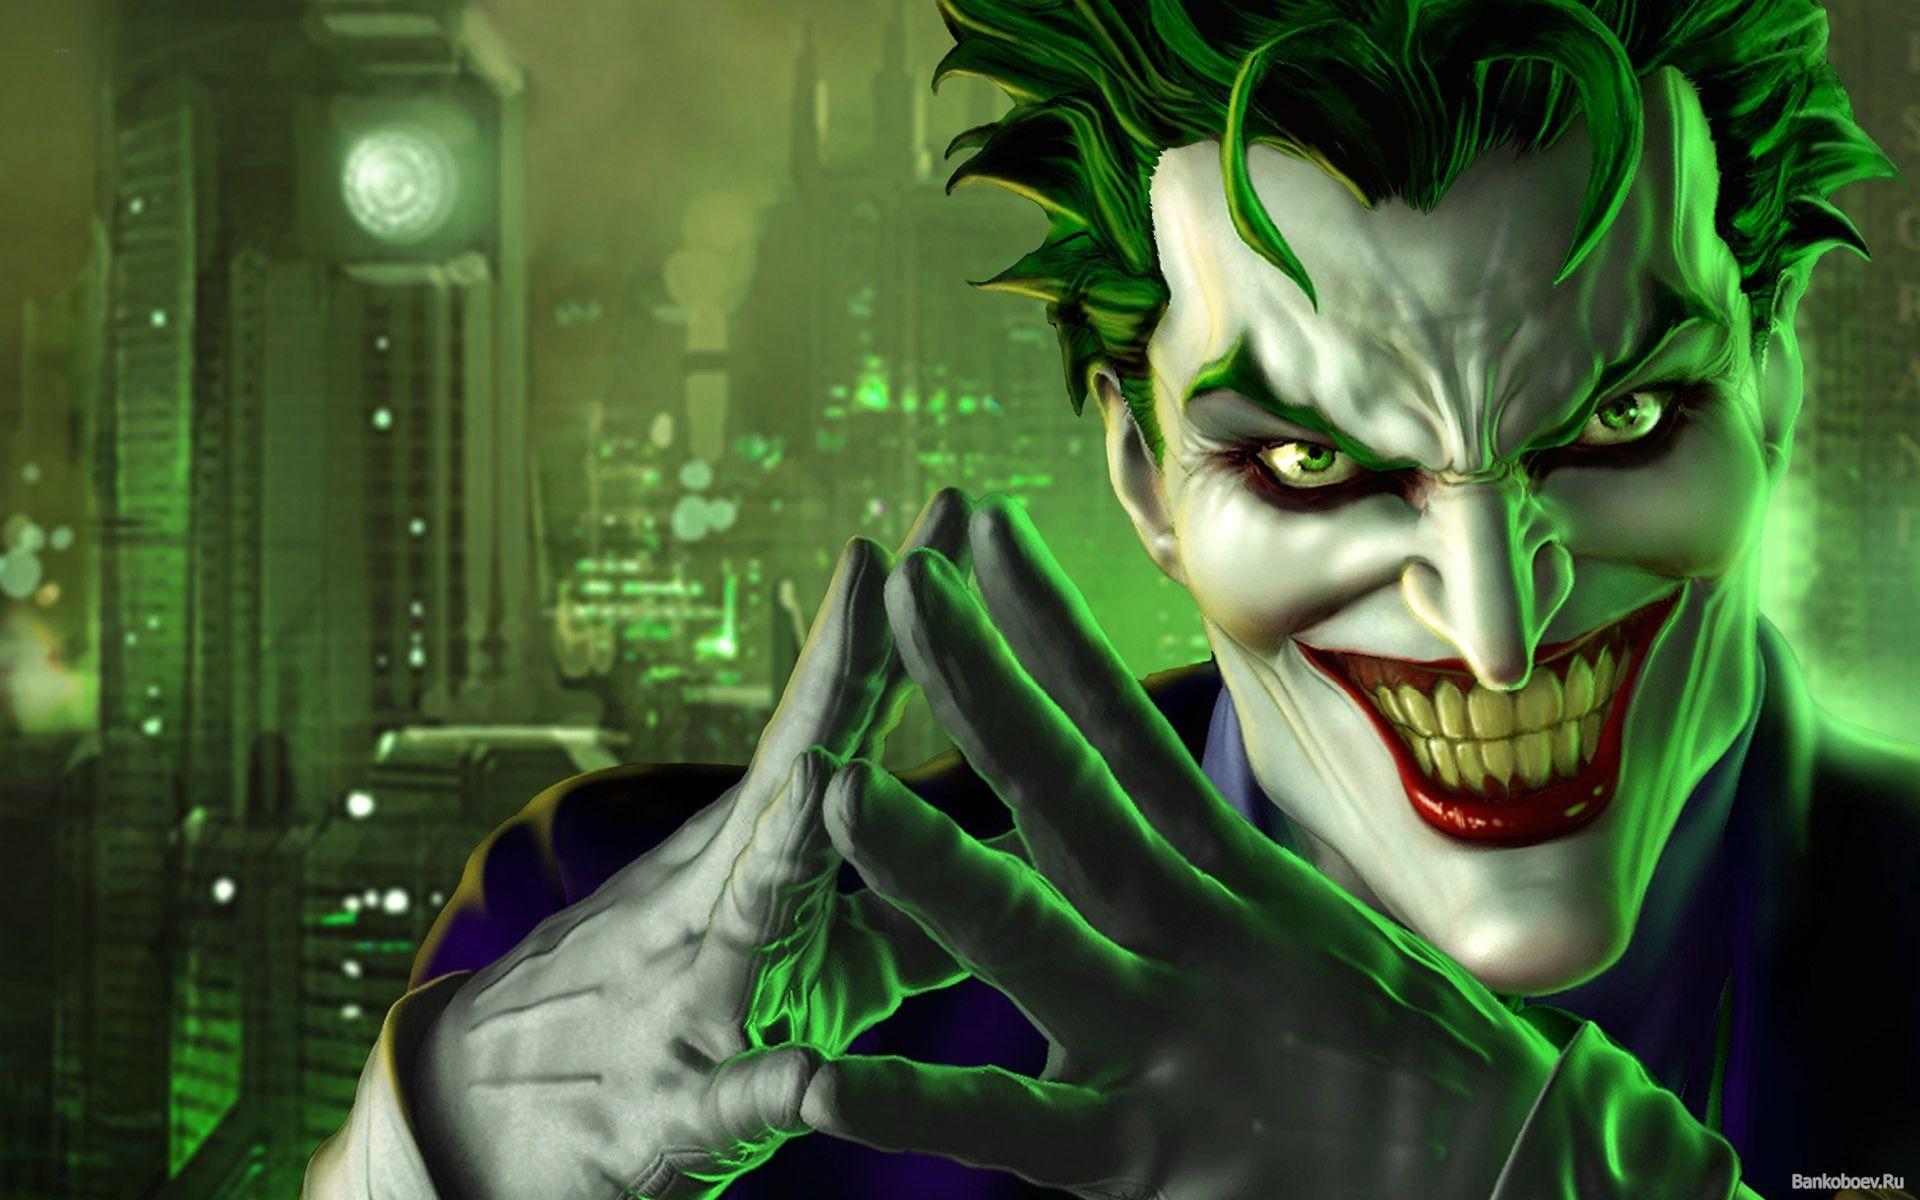 Joker Evil Smile Wallpaper